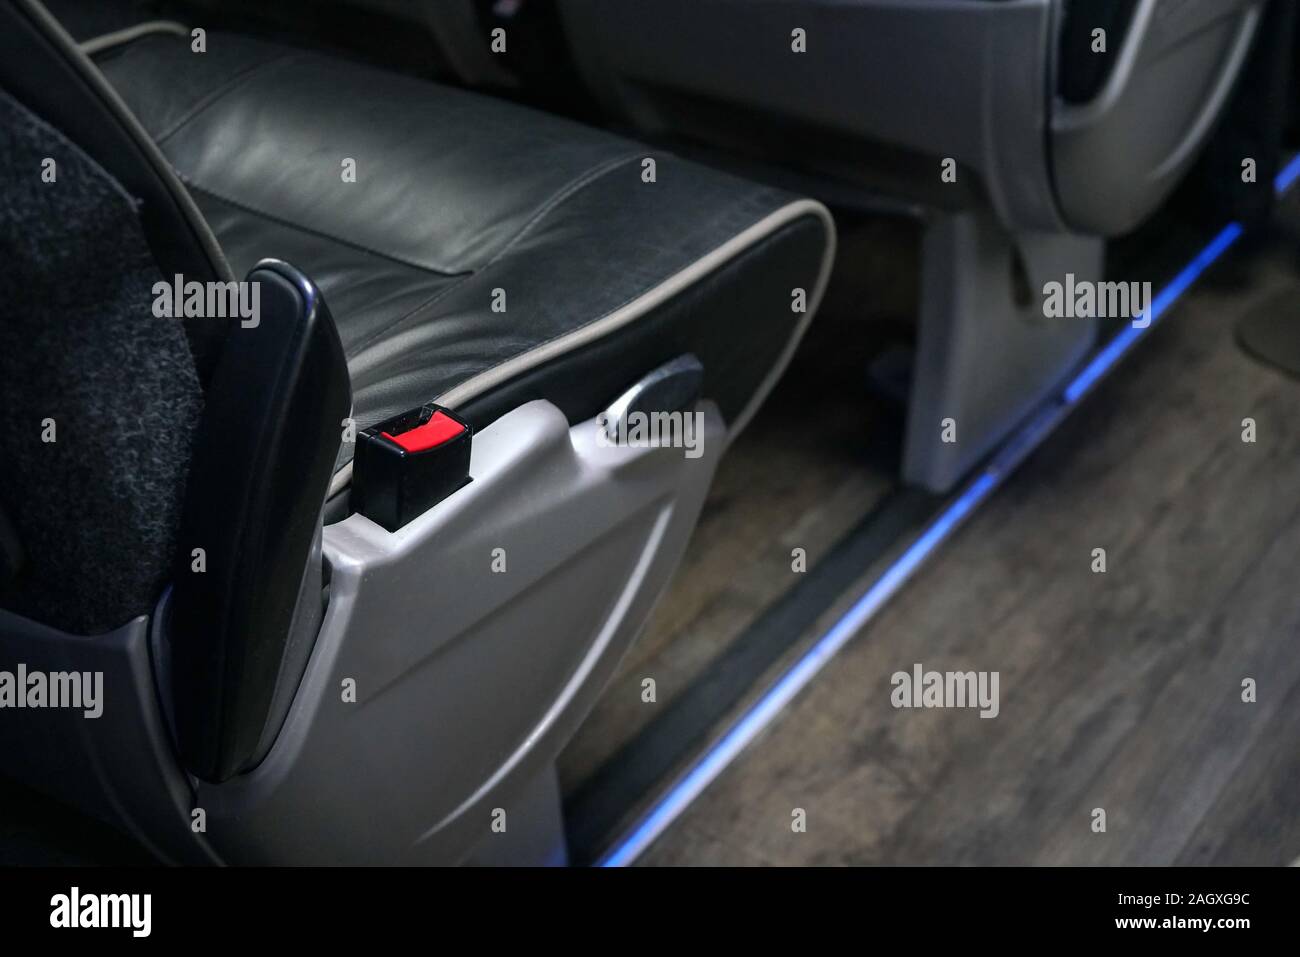 Seatbelt bus immagini e fotografie stock ad alta risoluzione - Alamy